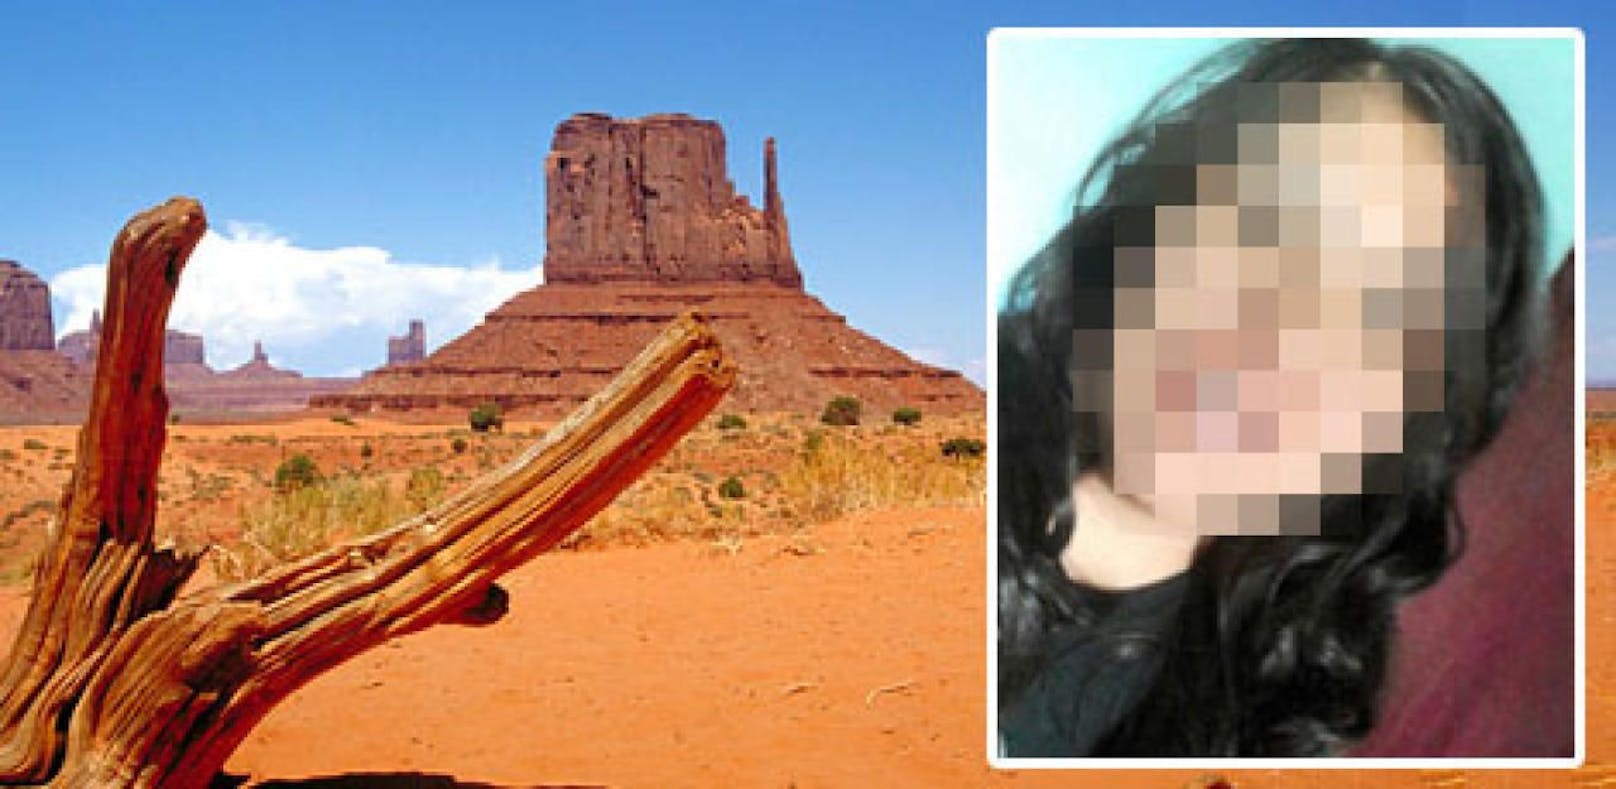 Die 23-Jährige hatte ihre Tochter in der Wüste des Navajo-Indianerreservats ausgesetzt.